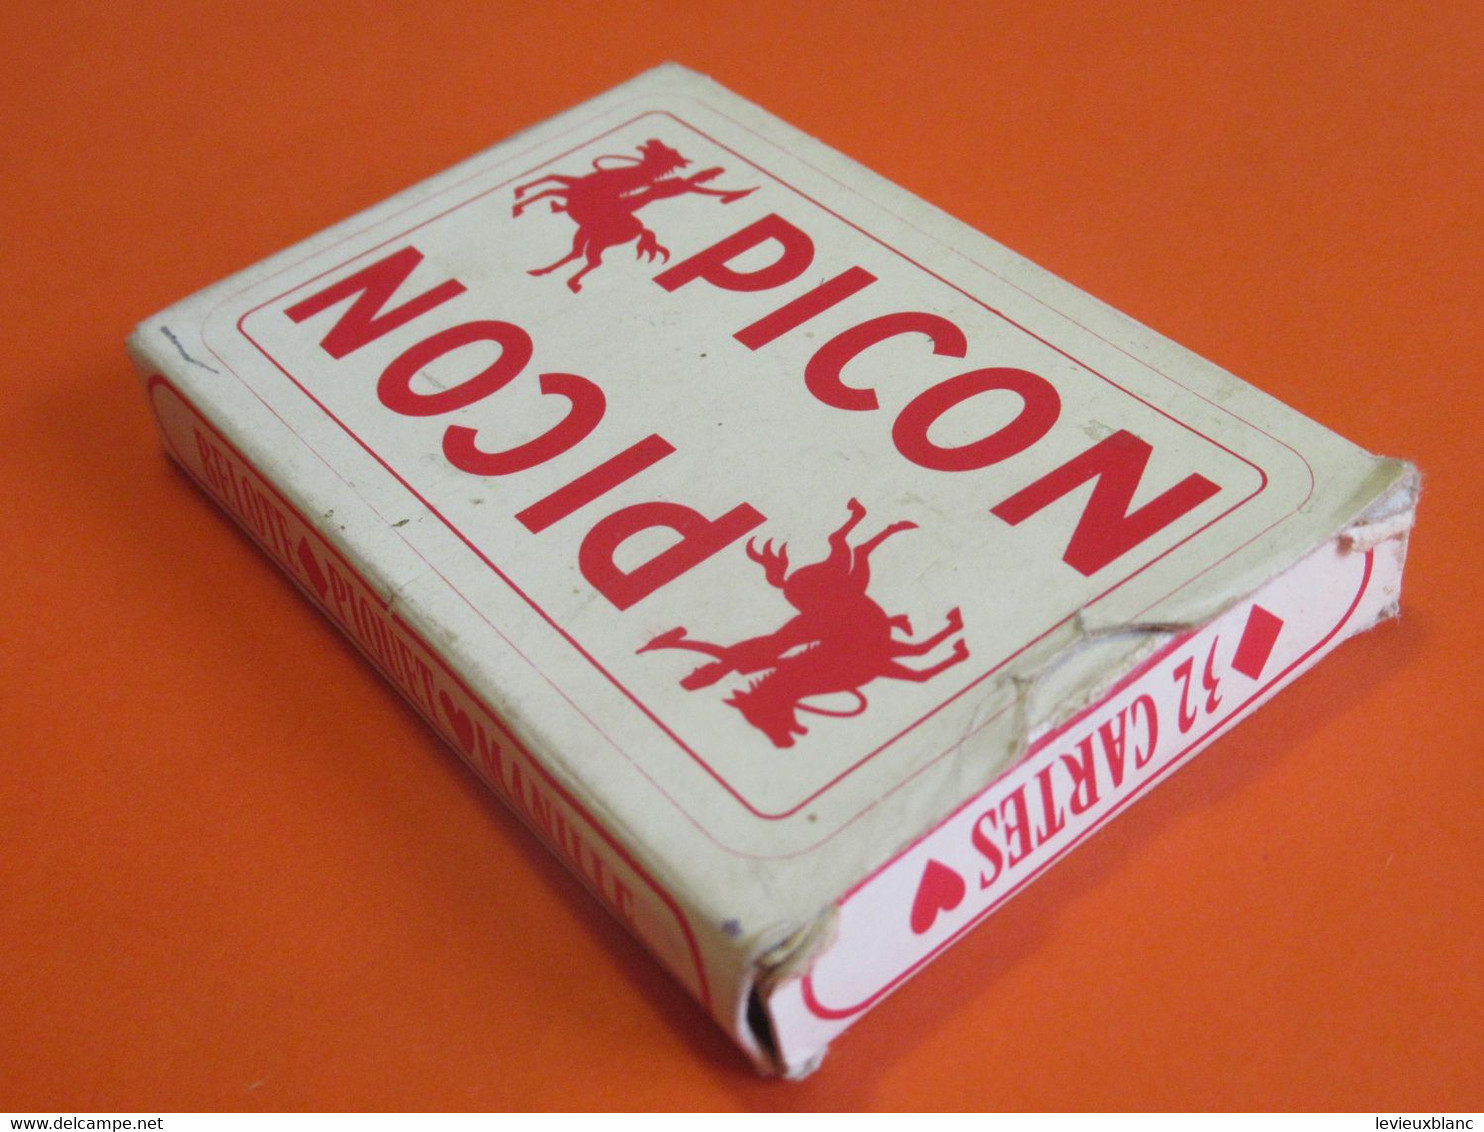 Jeu de cartes Publicitaire ancien usagé/ PICON/ 32 Cartes / Belote-Piquet-Manille/ Vers 1950-1960      JE247